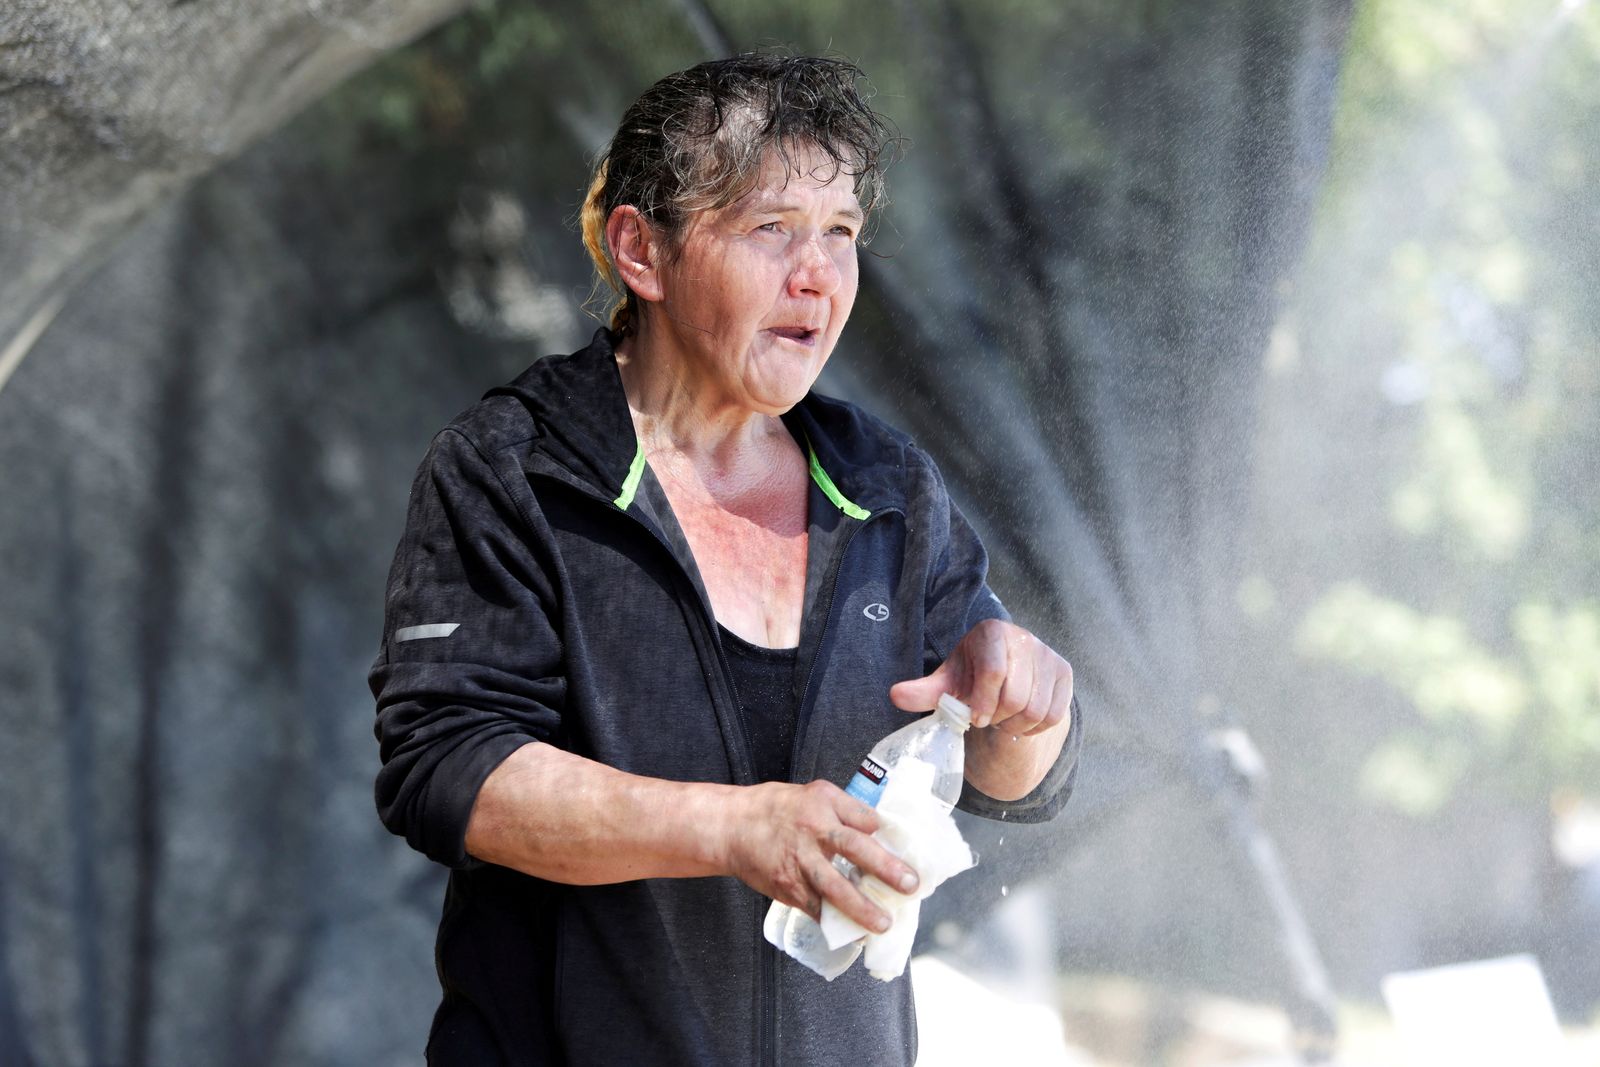 امرأة تشرب المياه وتبدو عليها آثار الارهاق من الحر . - REUTERS